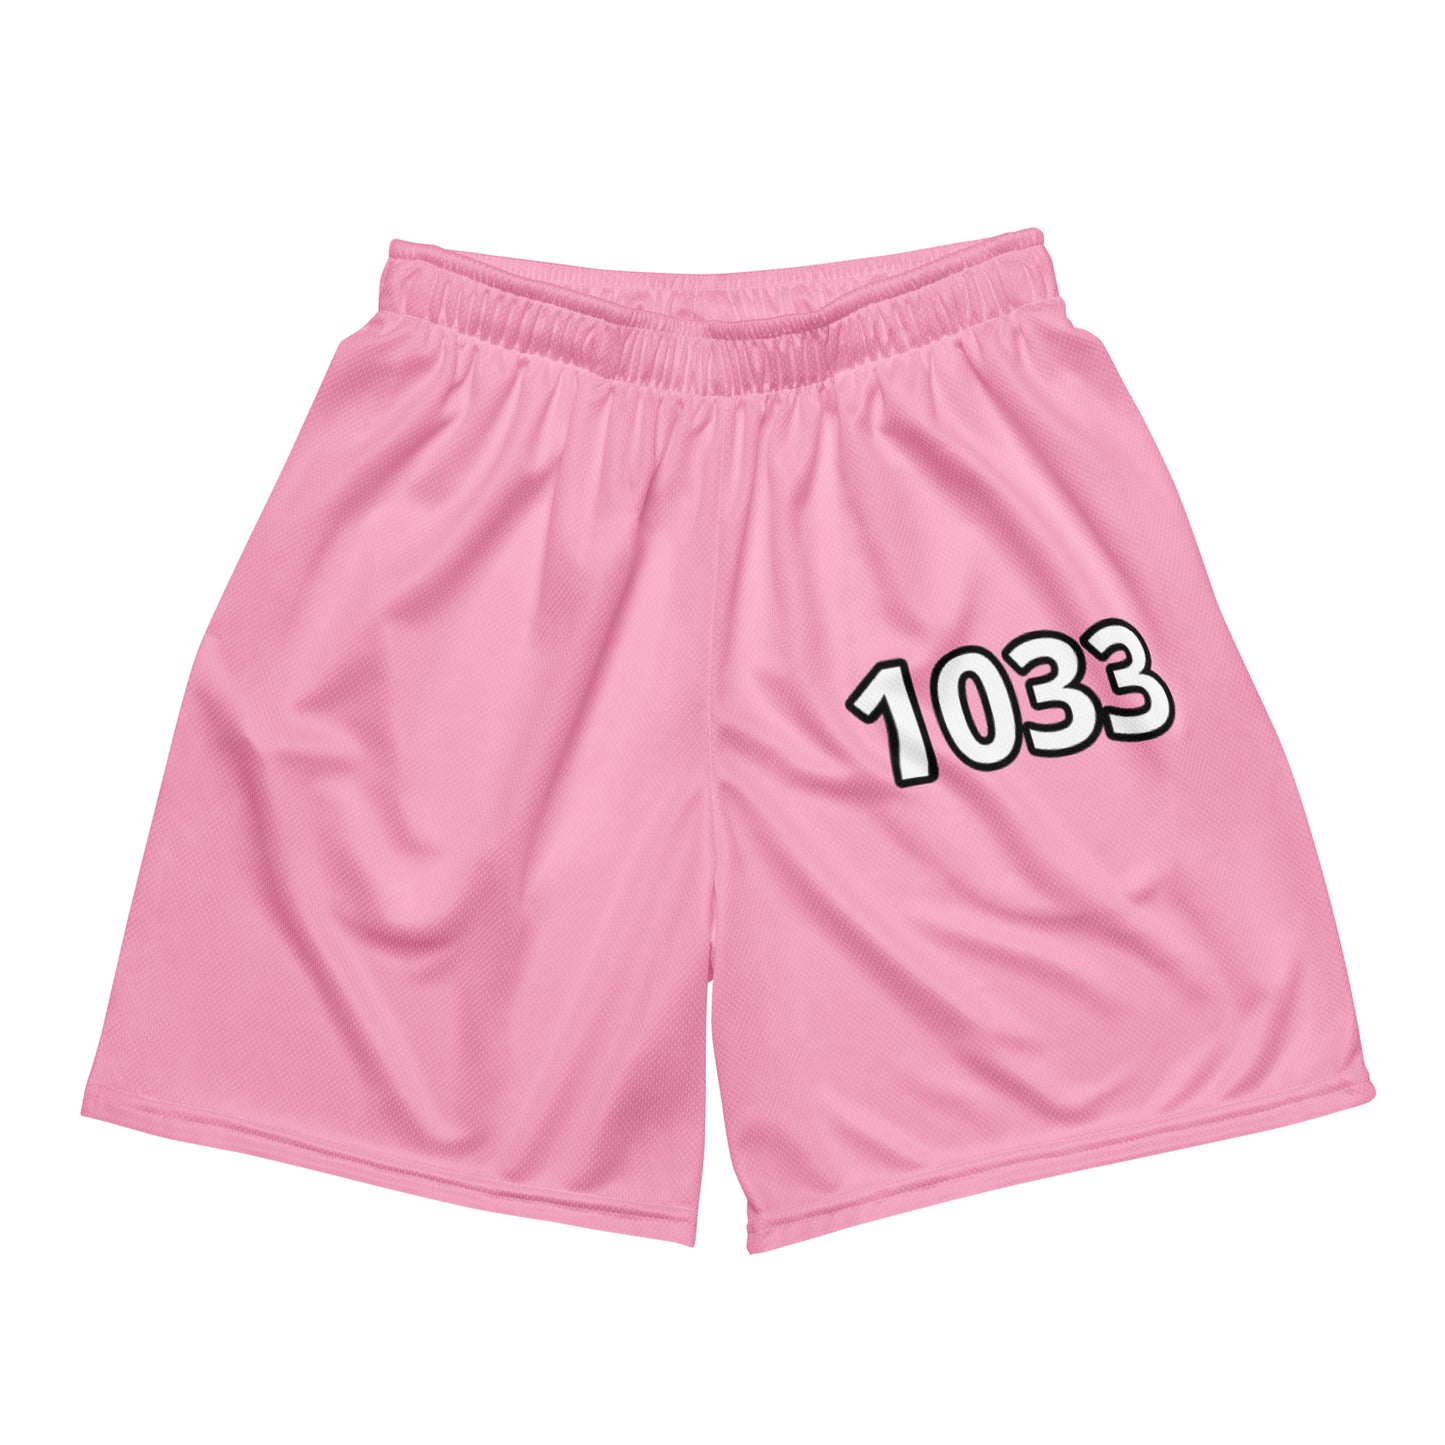 1033 valentines shorts